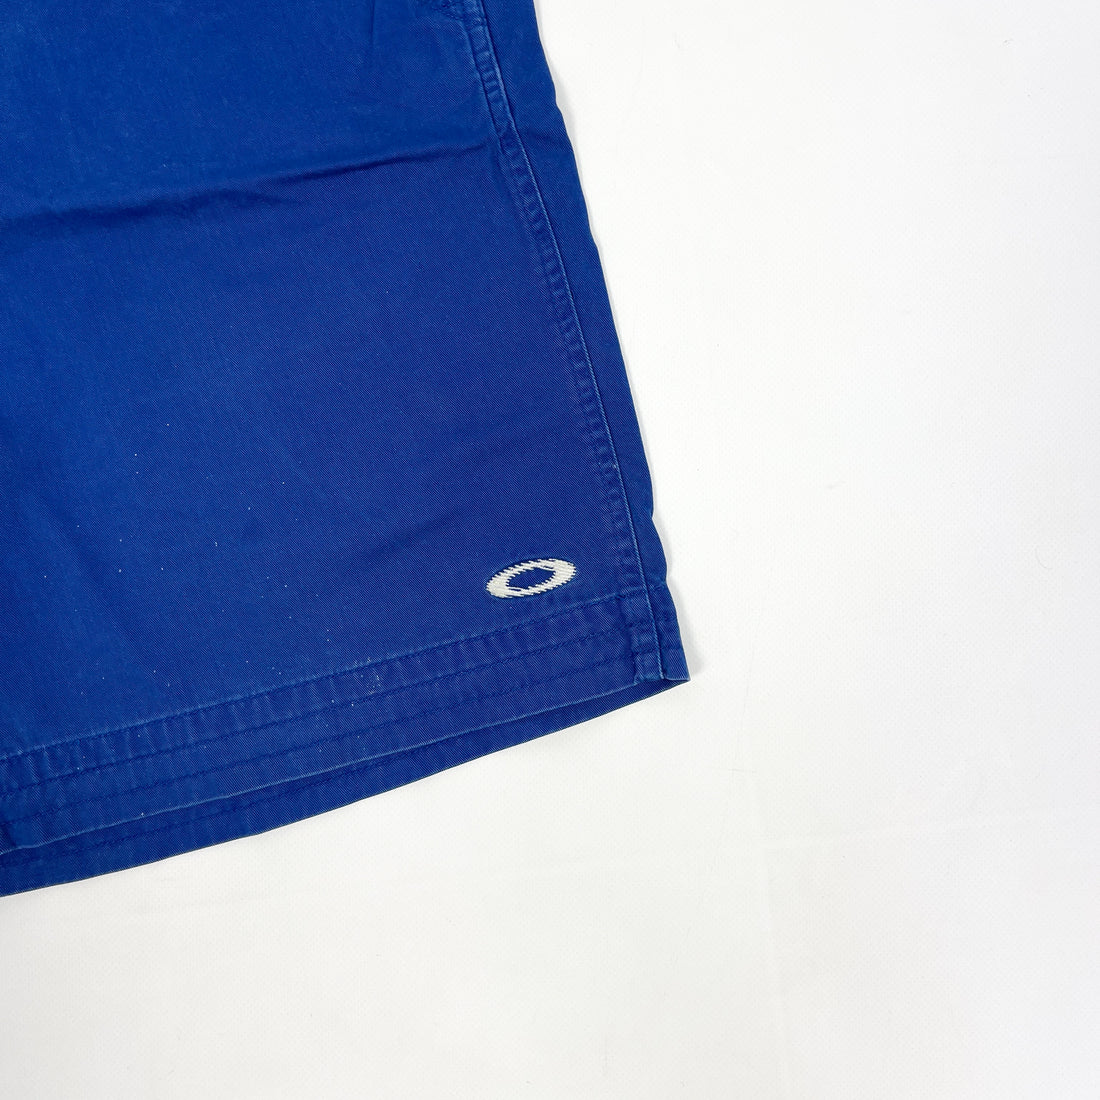 Oakley Software Deep Blue Shorts 1990's